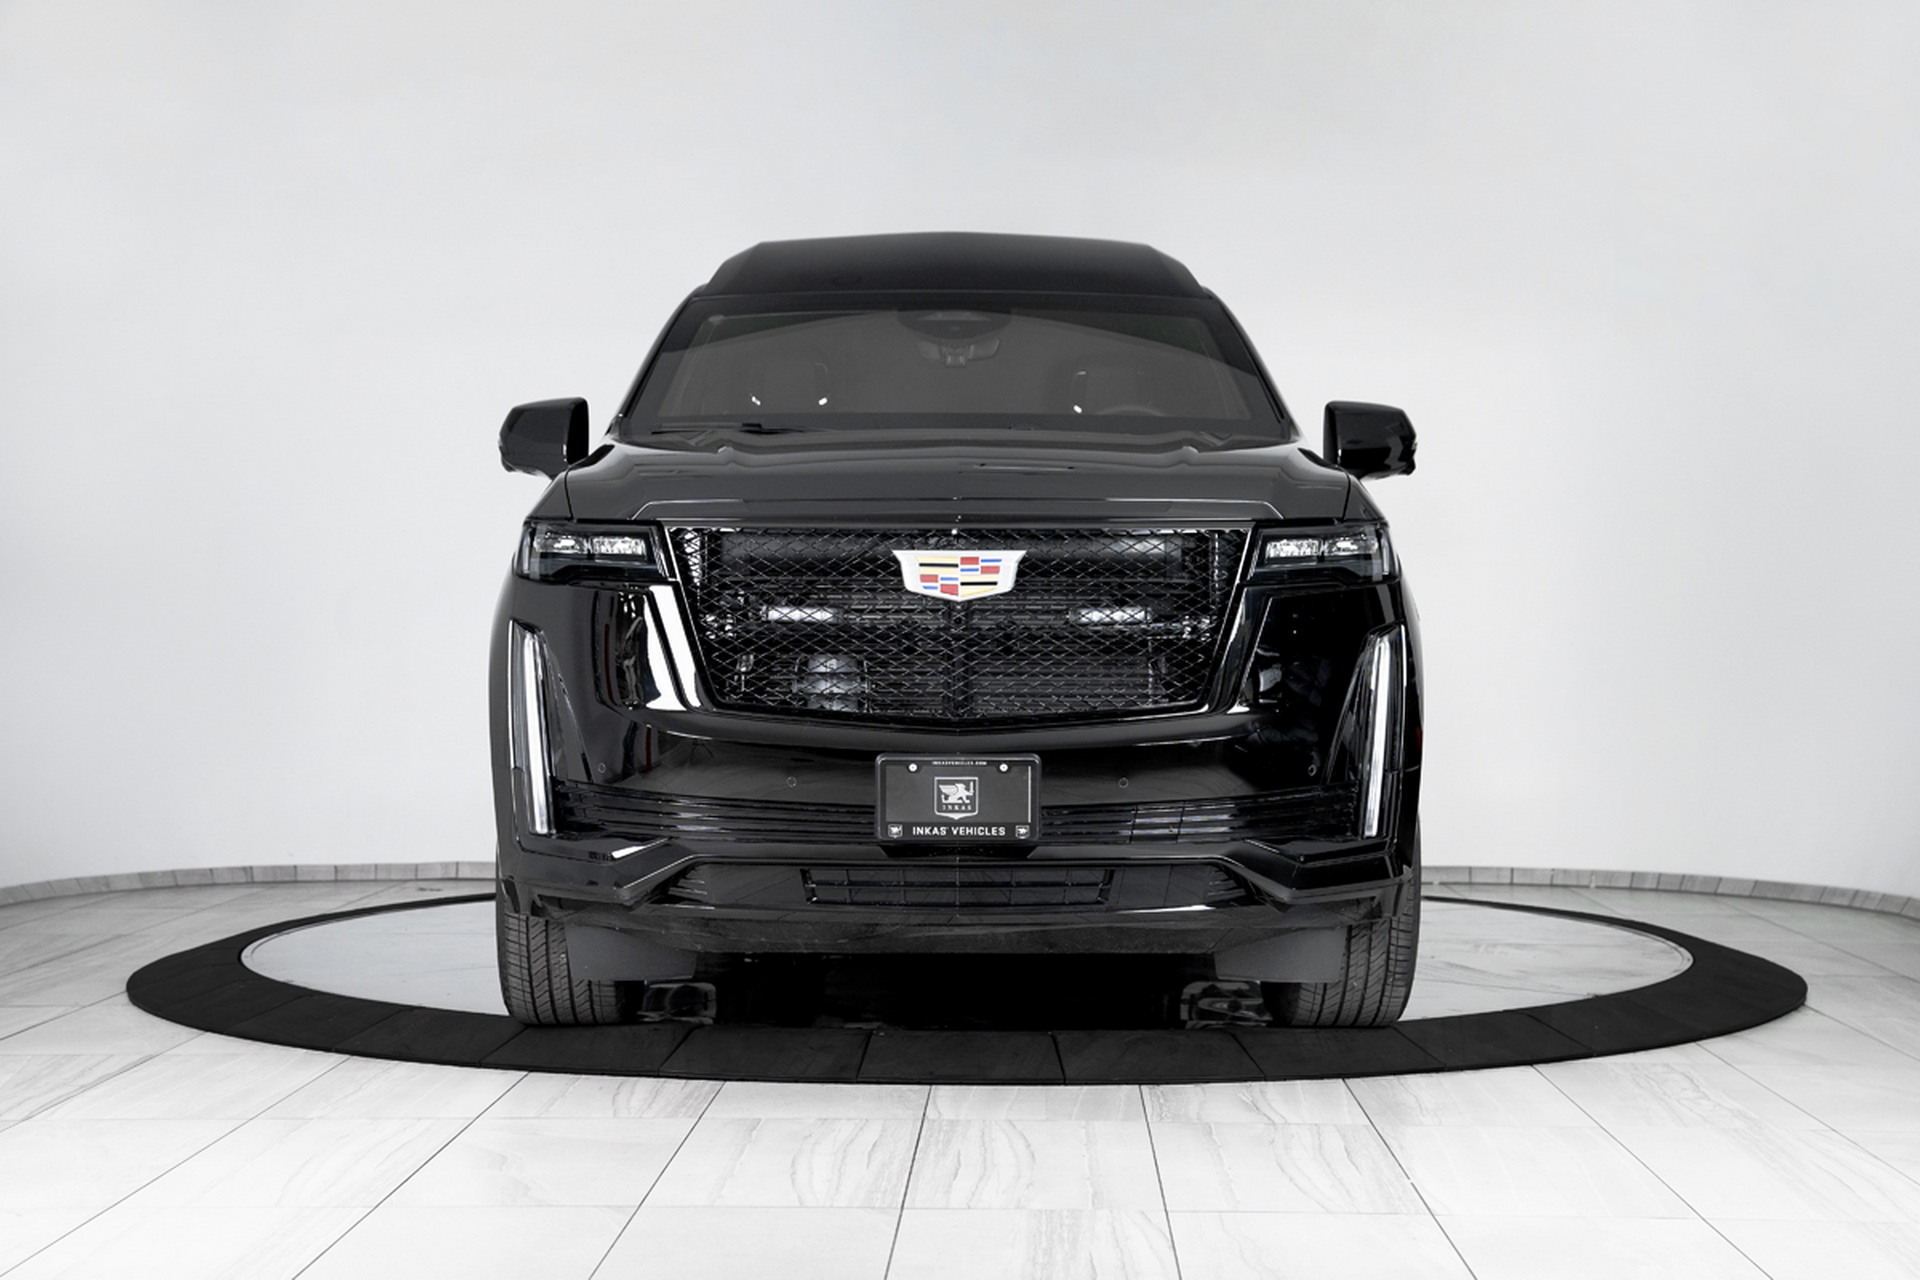 Đây là chiếc Cadillac Escalade bọc thép cực đỉnh dành cho các yếu nhân inkas-armored-cadillac-escalade-chairman-2.jpg